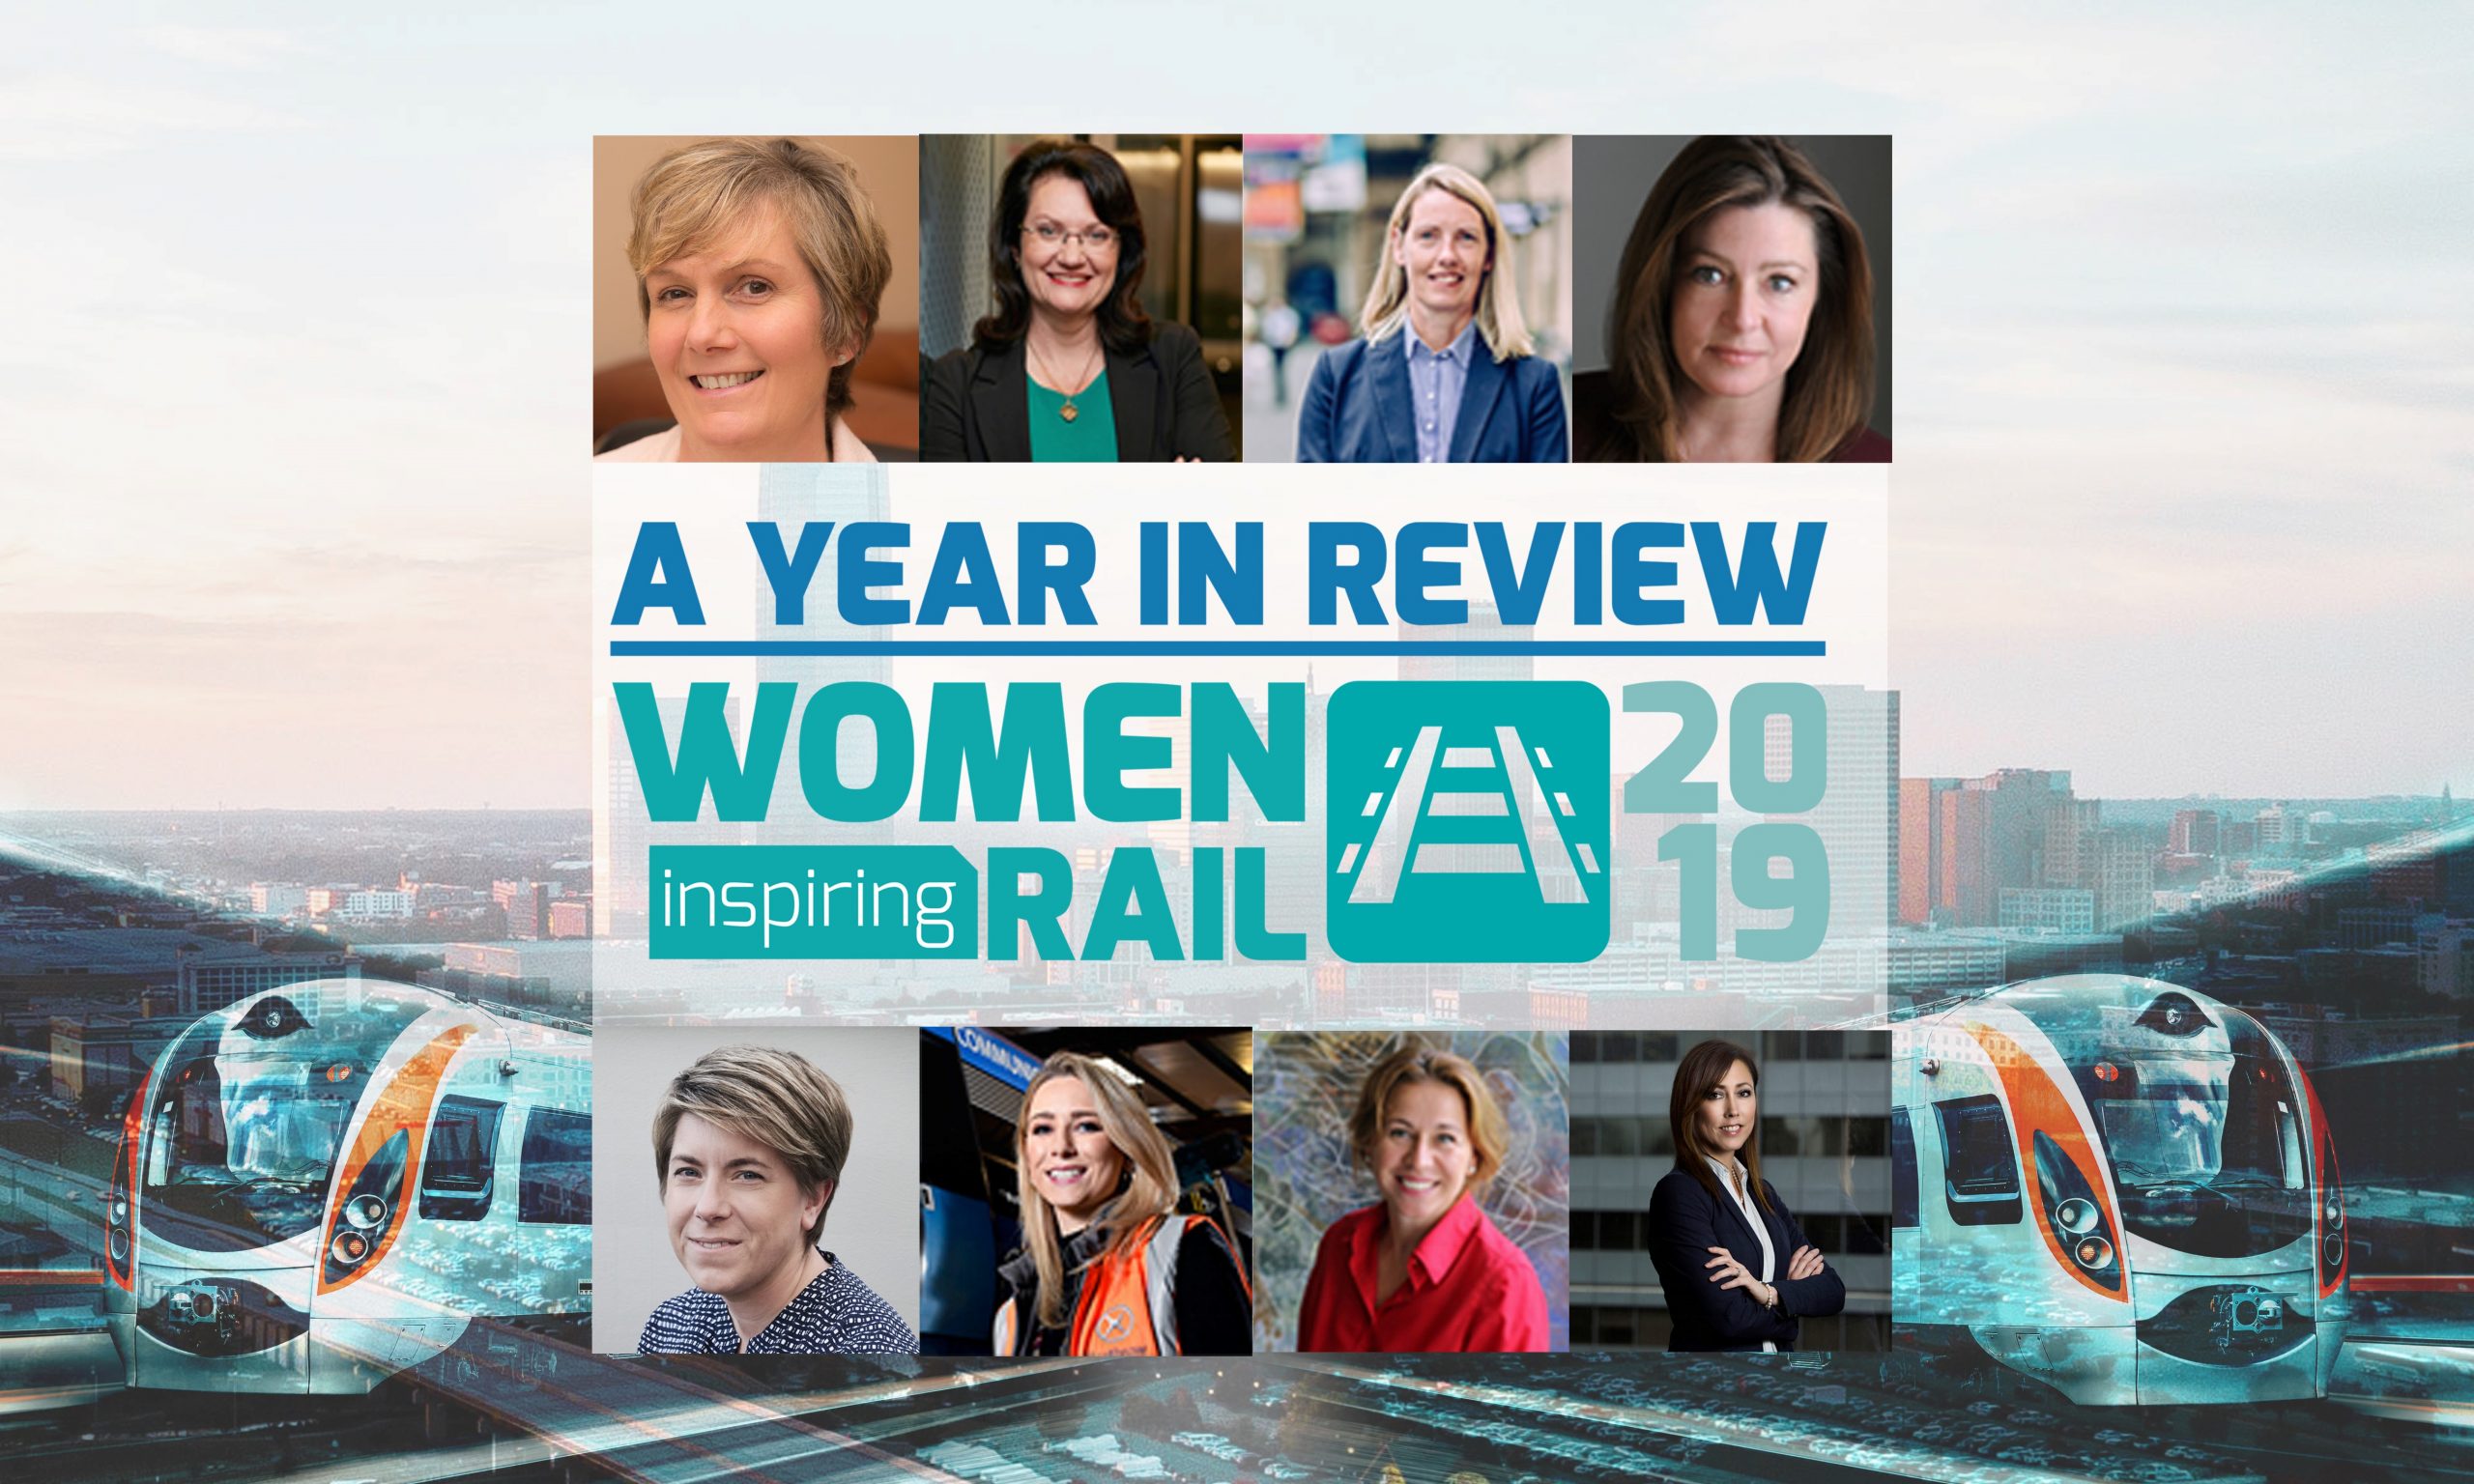 女性励志铁路:一年回顾